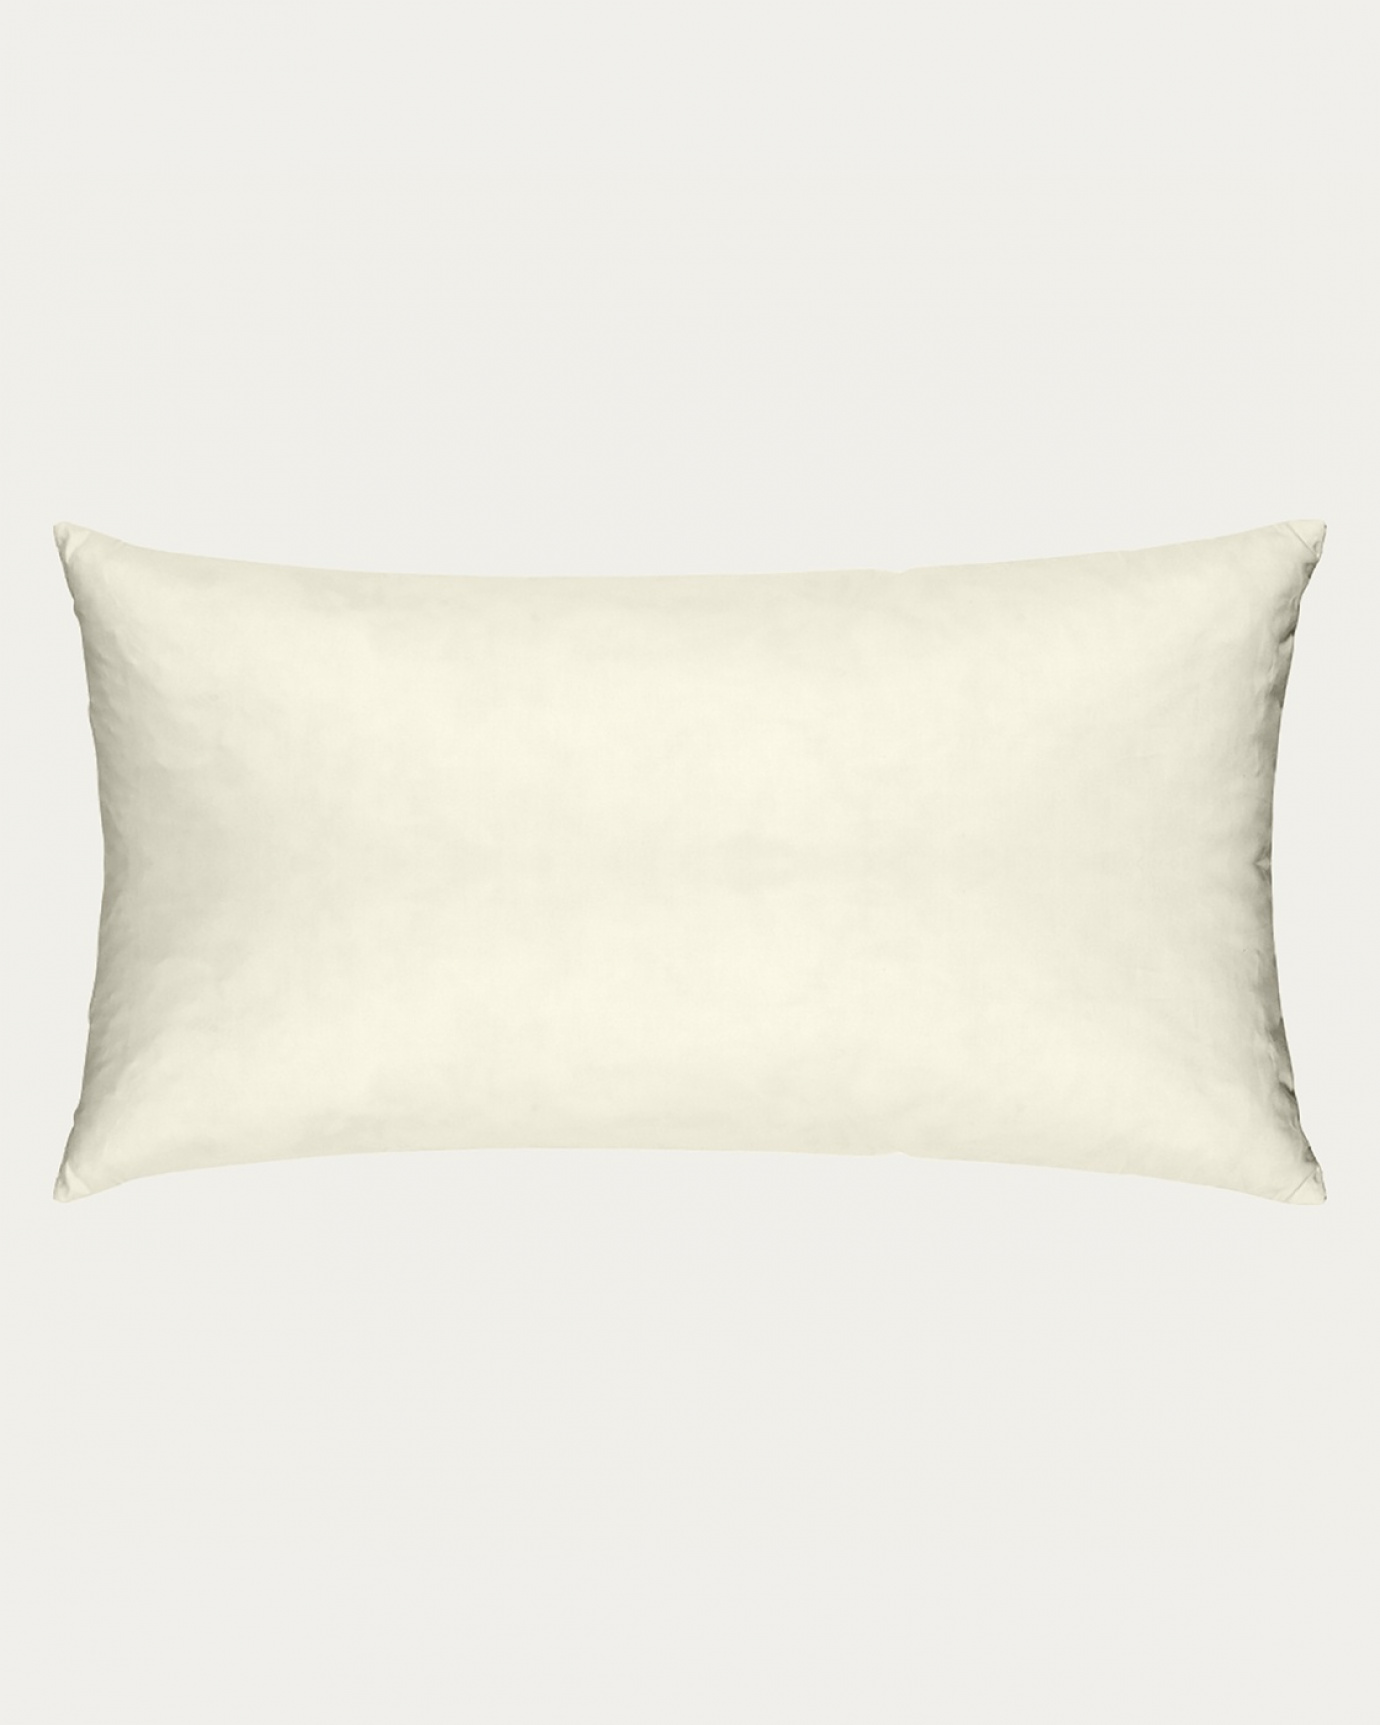 Immagine prodotto beige cotone FEATHER cuscini interni in cotone con imbottitura in piuma e poliestere di LINUM DESIGN. Dimensione 50x90 cm.